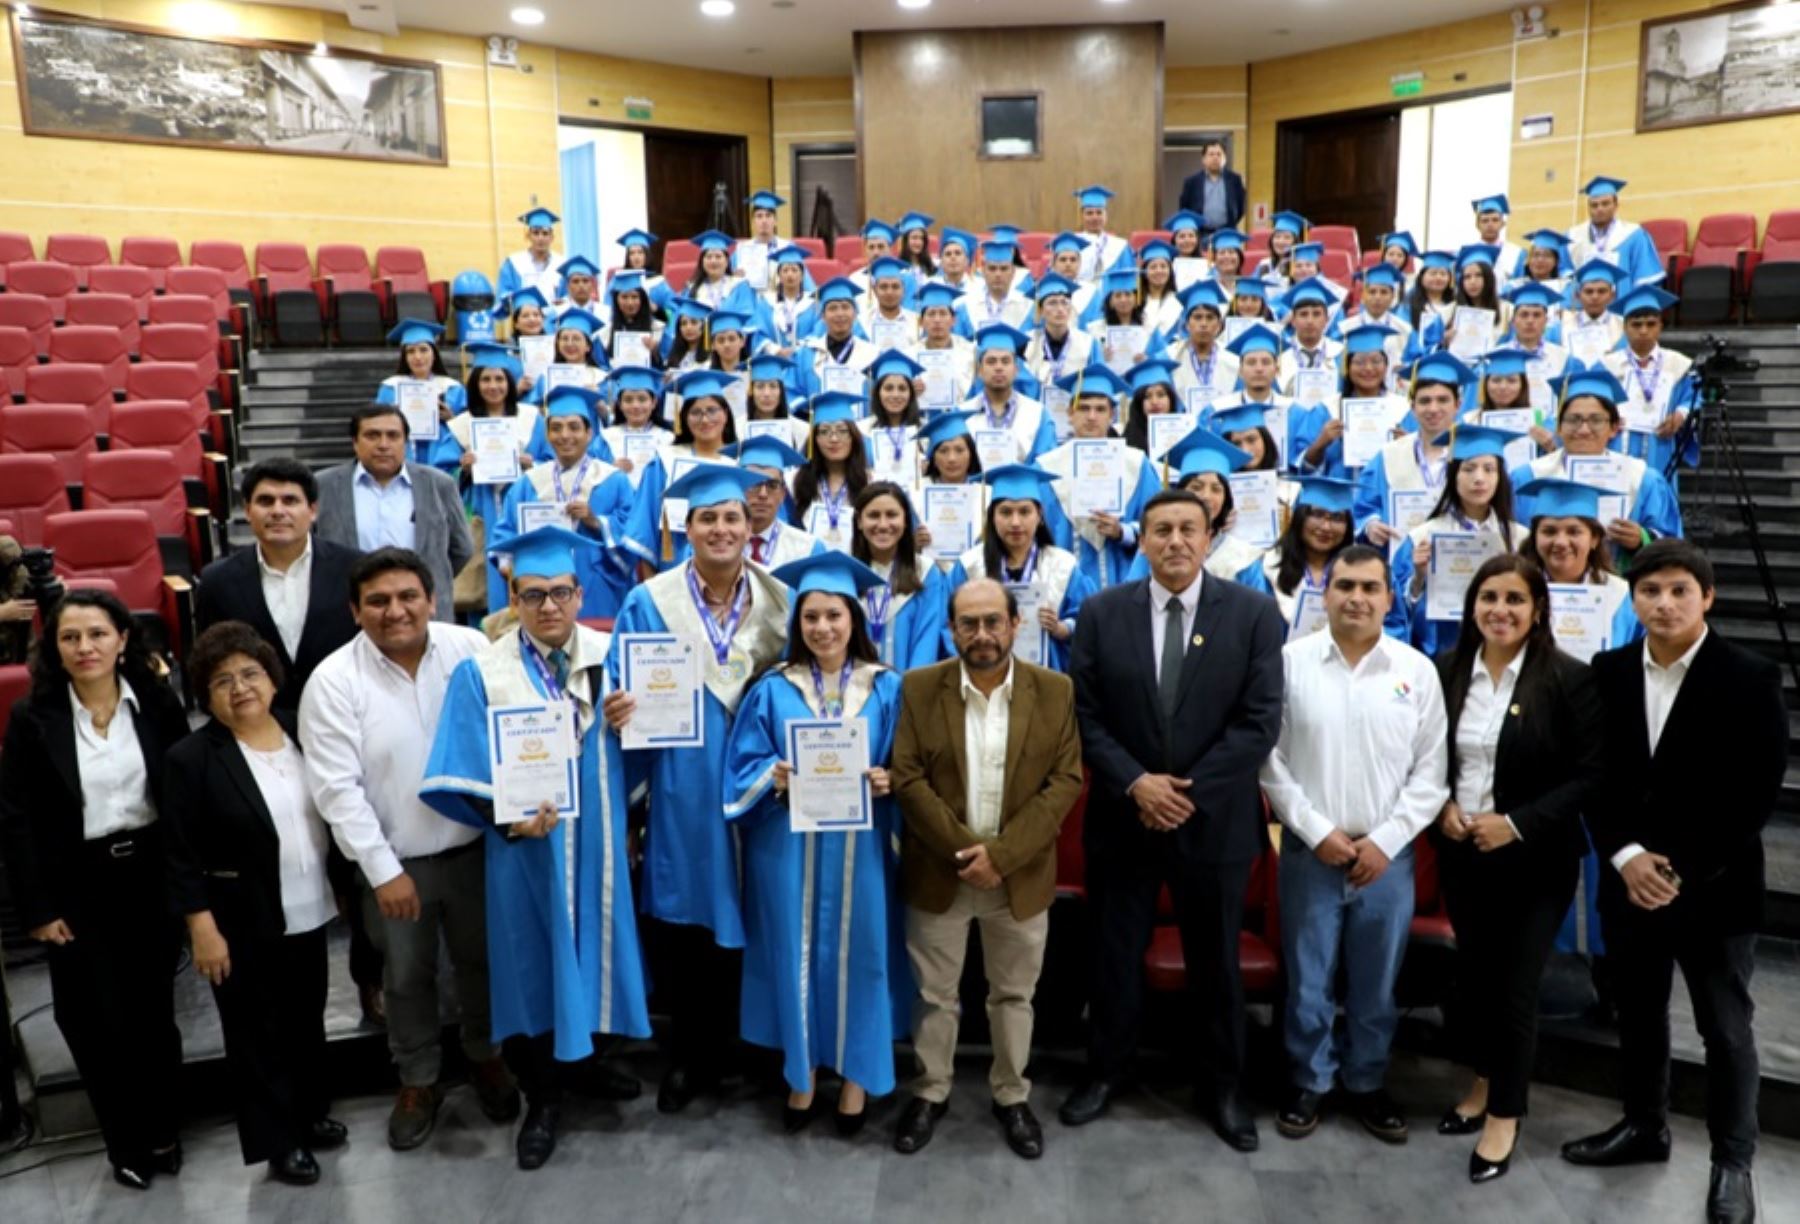 Más de 100 voluntarios ambientales fueron certificados por el Gobierno Regional de Cajamarca, a través de la Gerencia de Recursos Naturales y Medio Ambiente (Renama), tras finalizar la capacitación de un año a cargo de especialistas del Ministerio del Ambiente, del Gore Cajamarca y de la organización alemana Konrad Adenauer Stiftung.